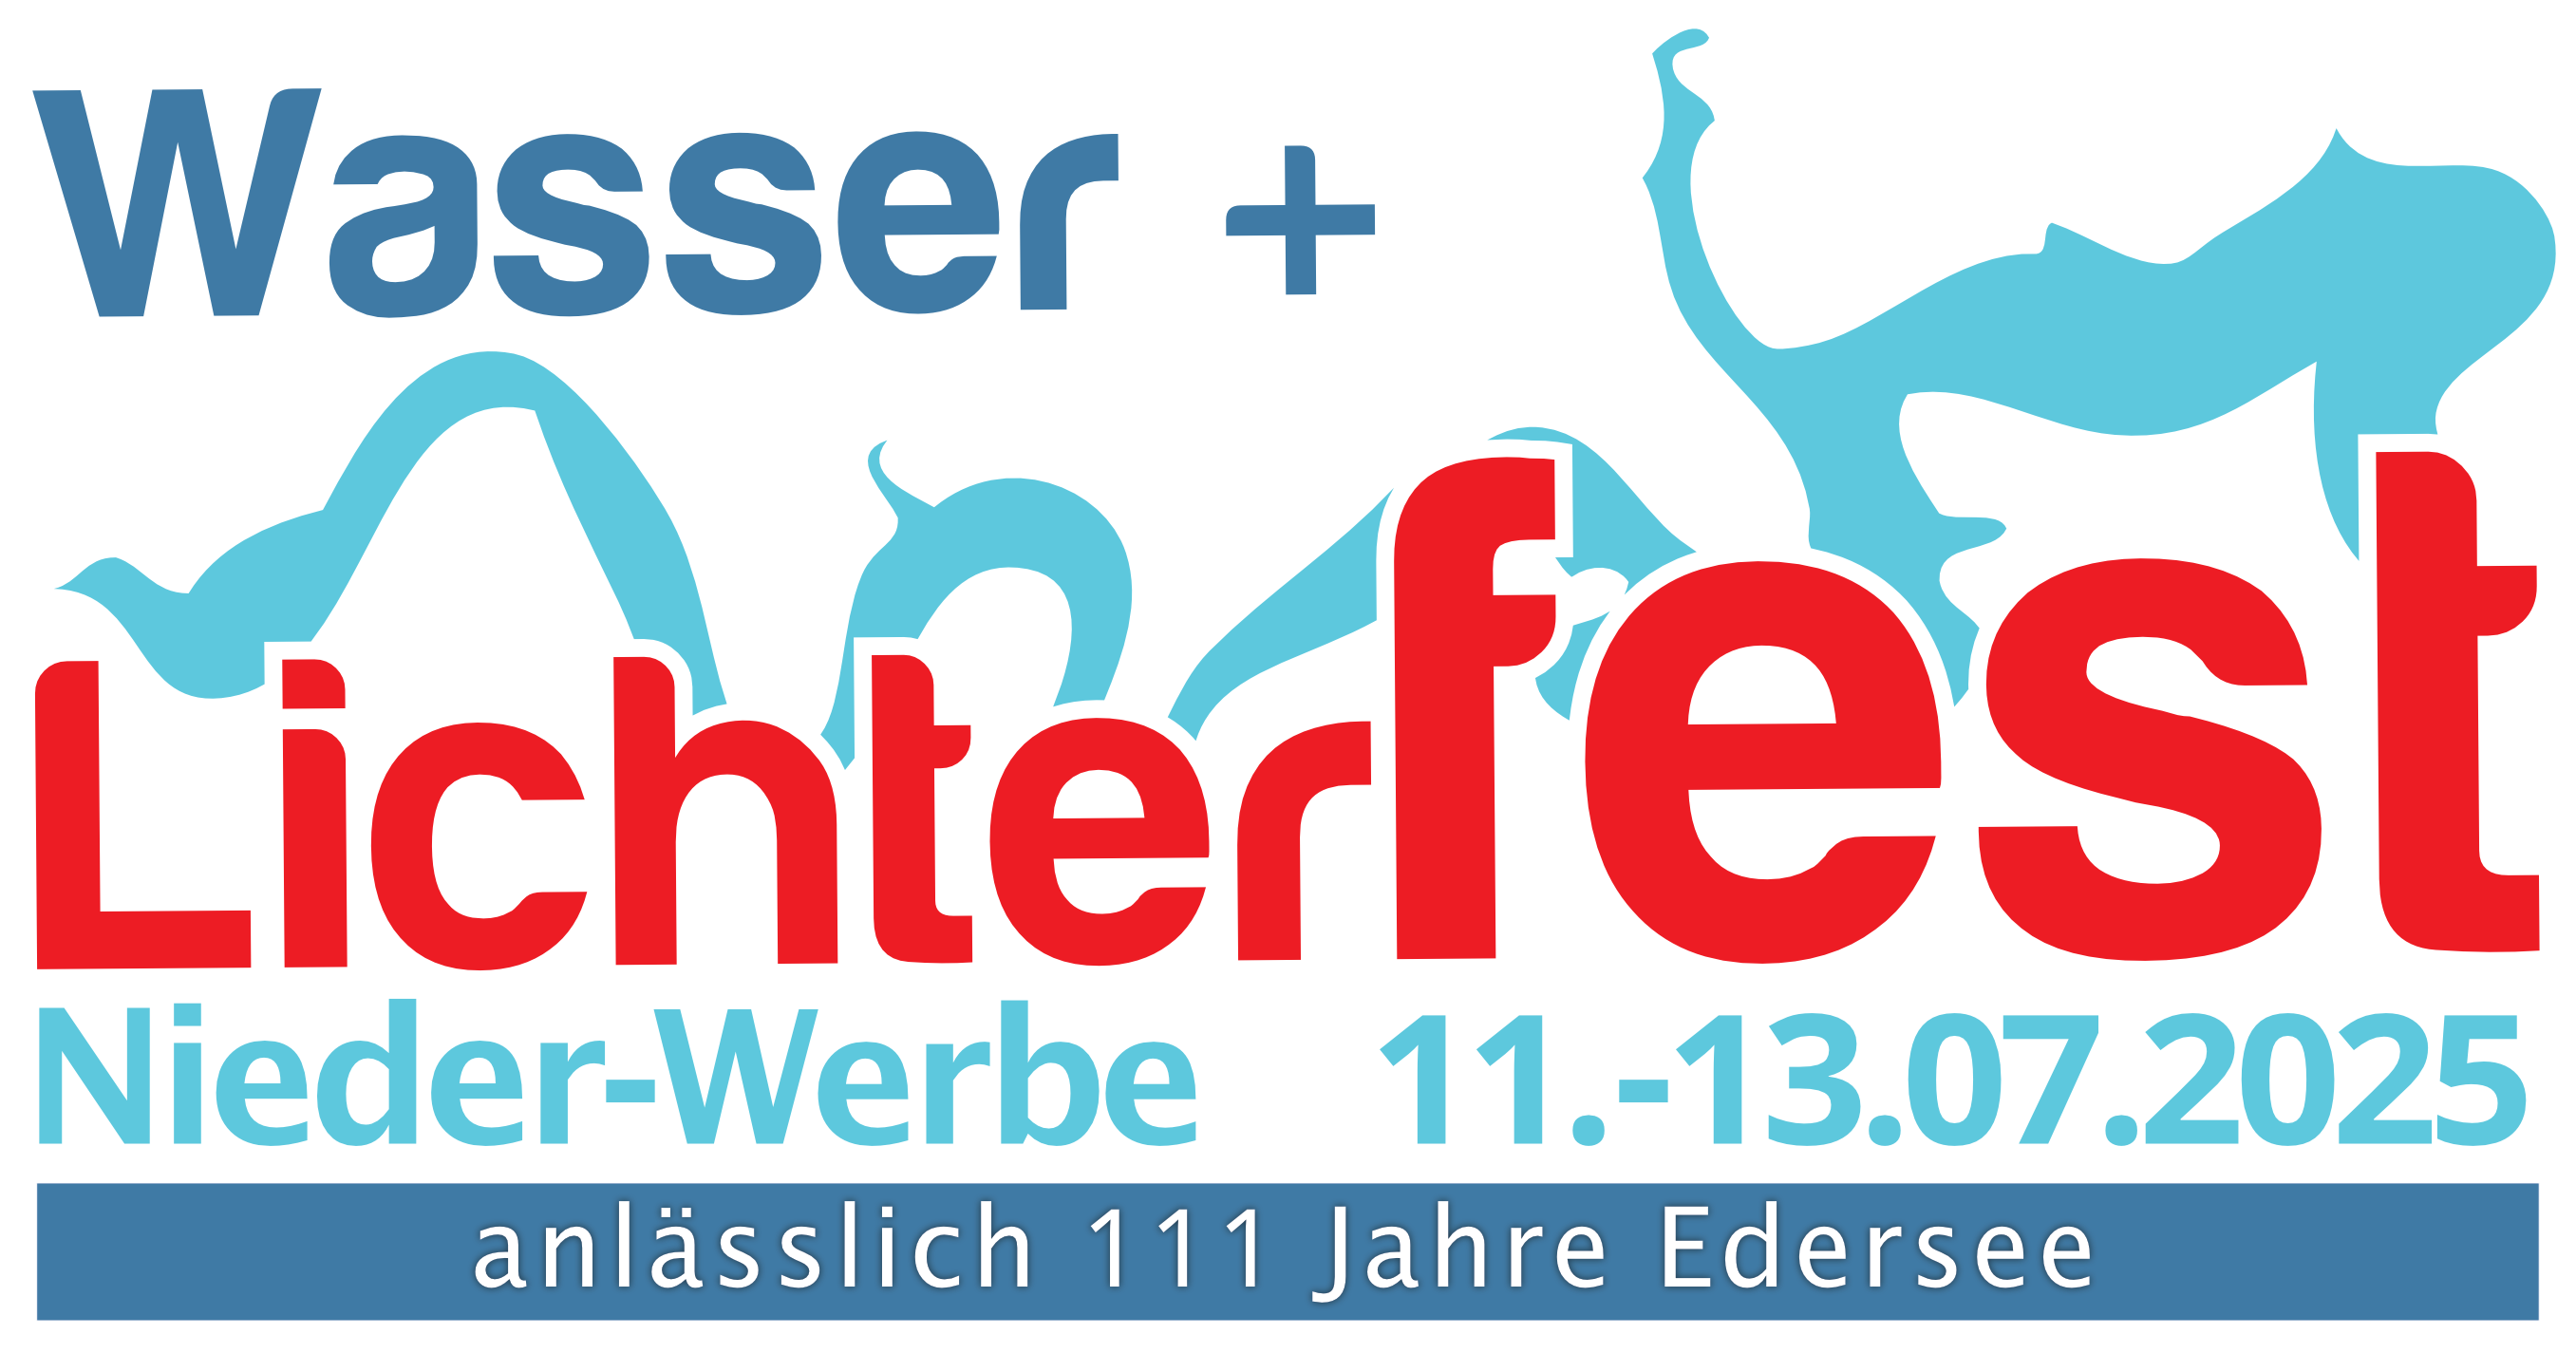 Logo Lichterfest - 111 Jahre Edersee: 11.-13.07.2025 in Nieder-Werbe